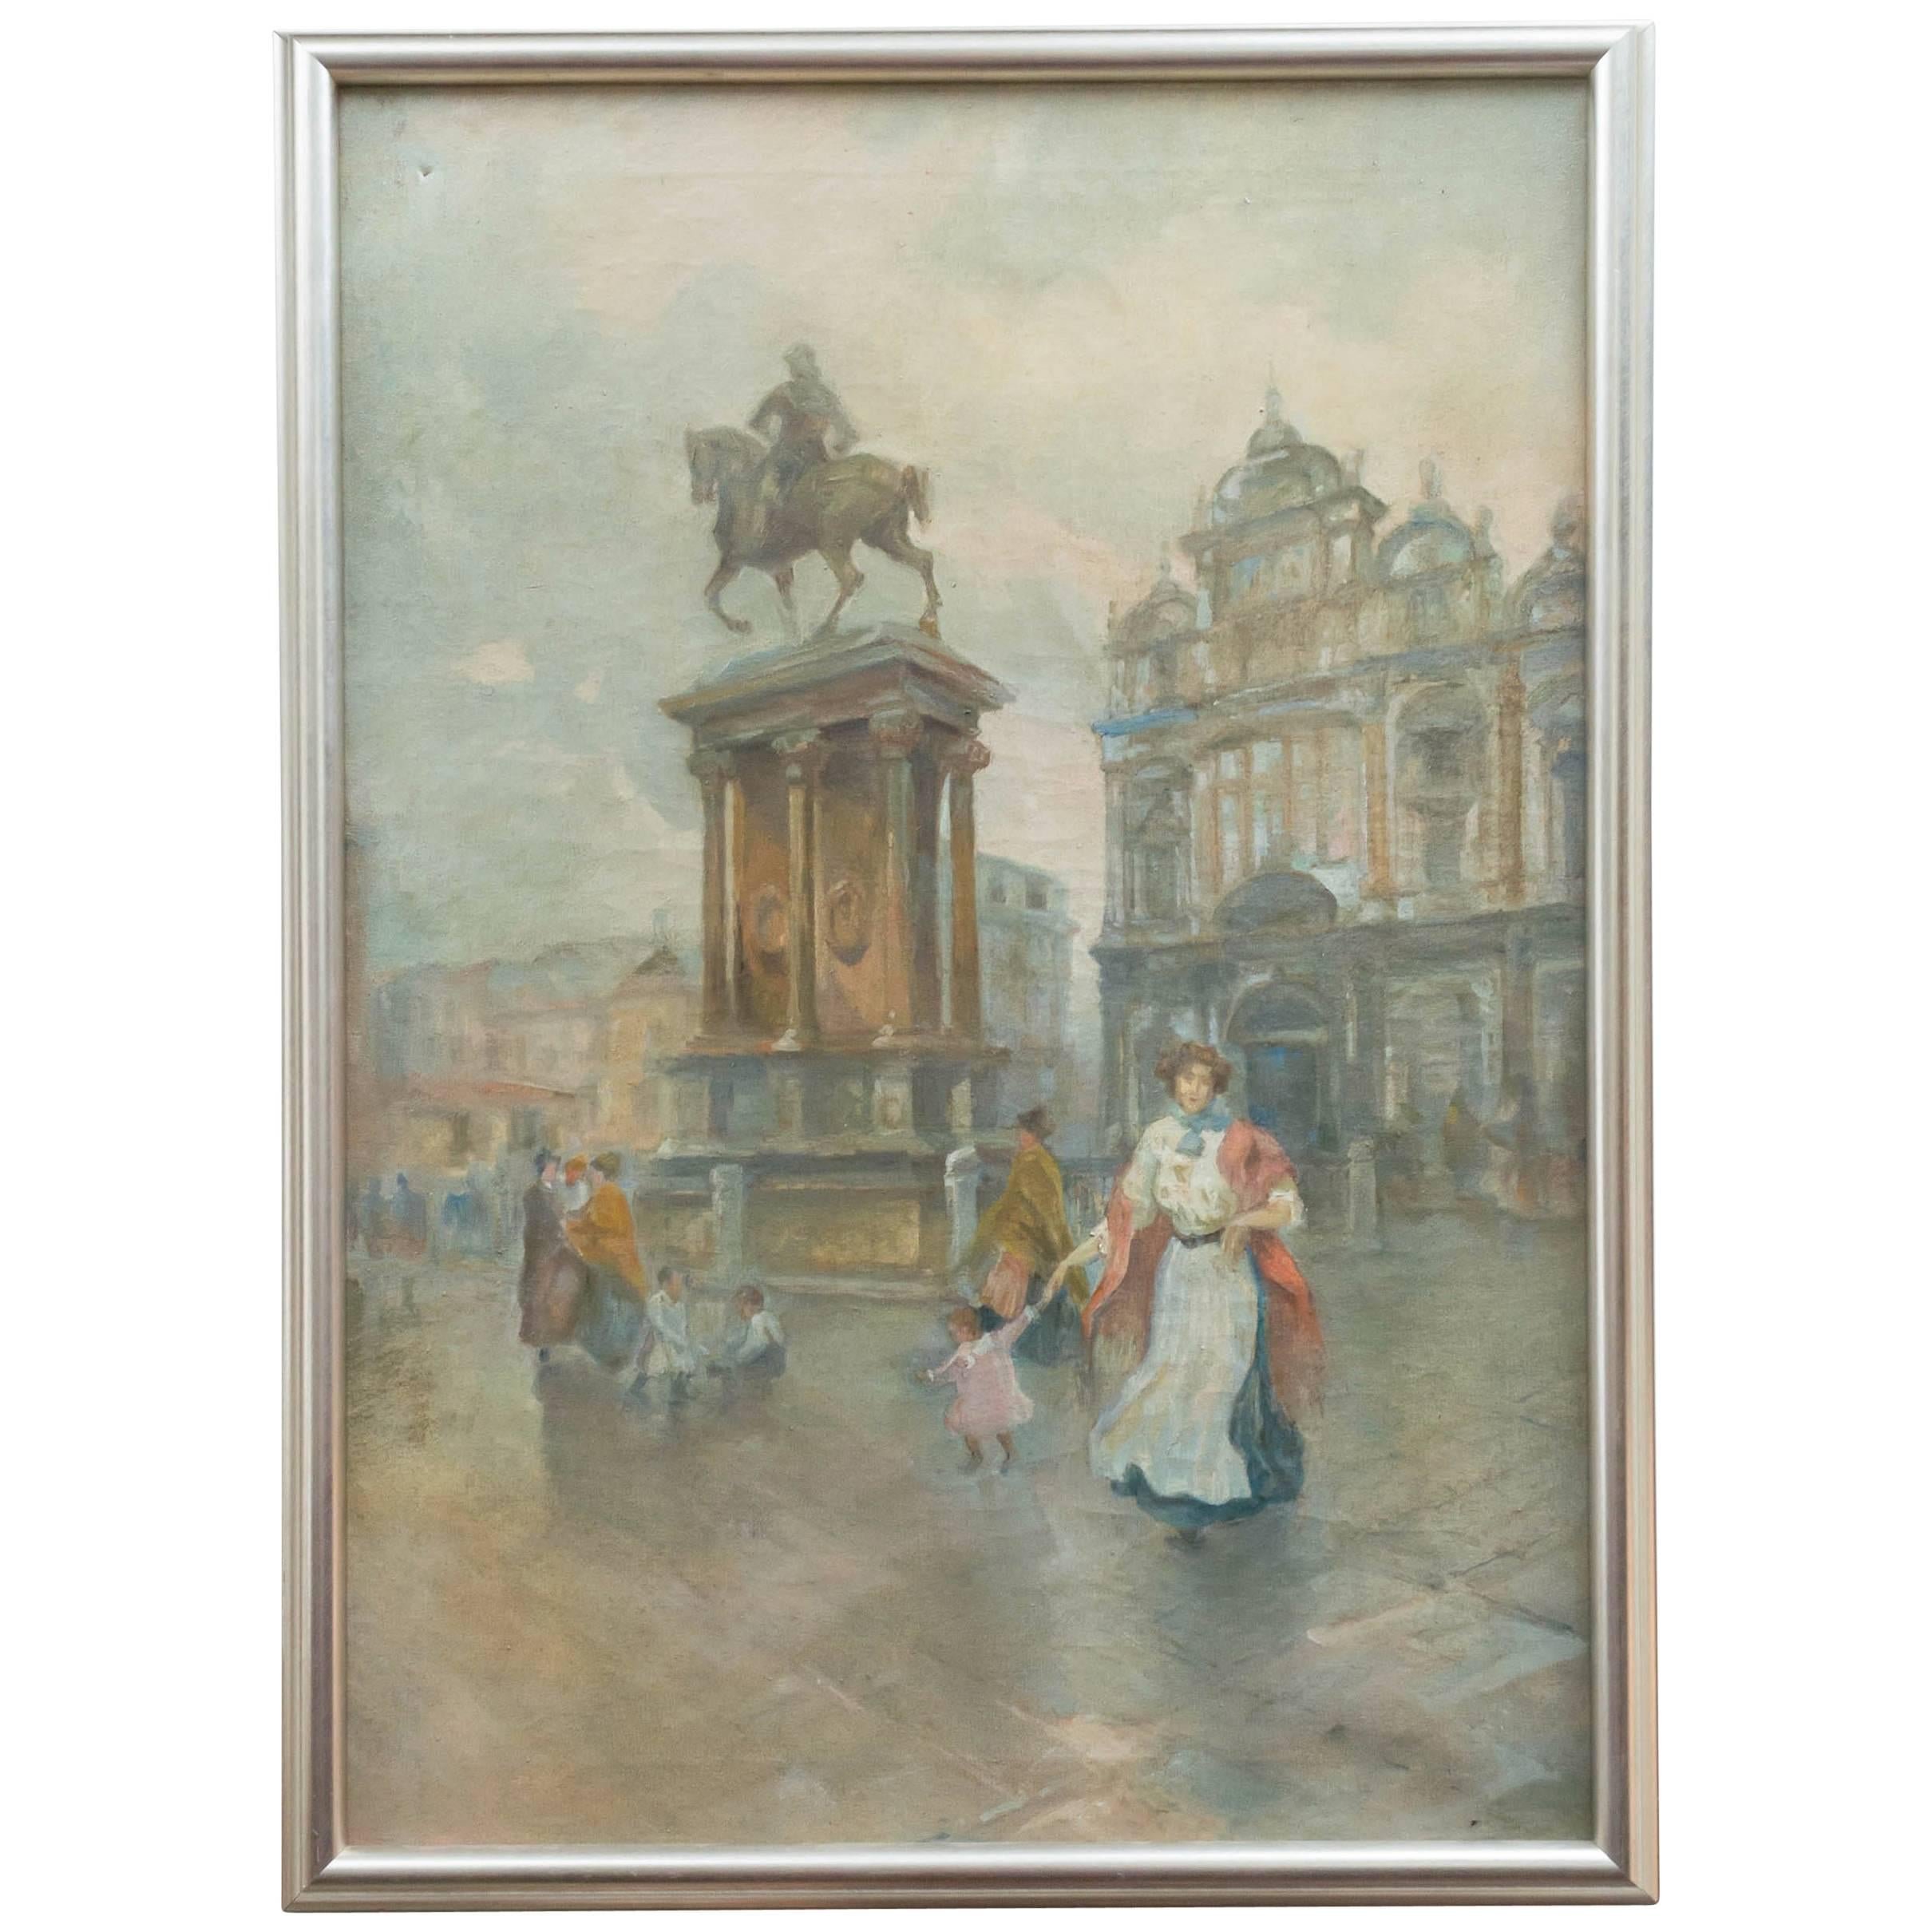 Venetian Oil on Canvas, "Campo S. Giovanni & Paolo Monumento Colleoni"